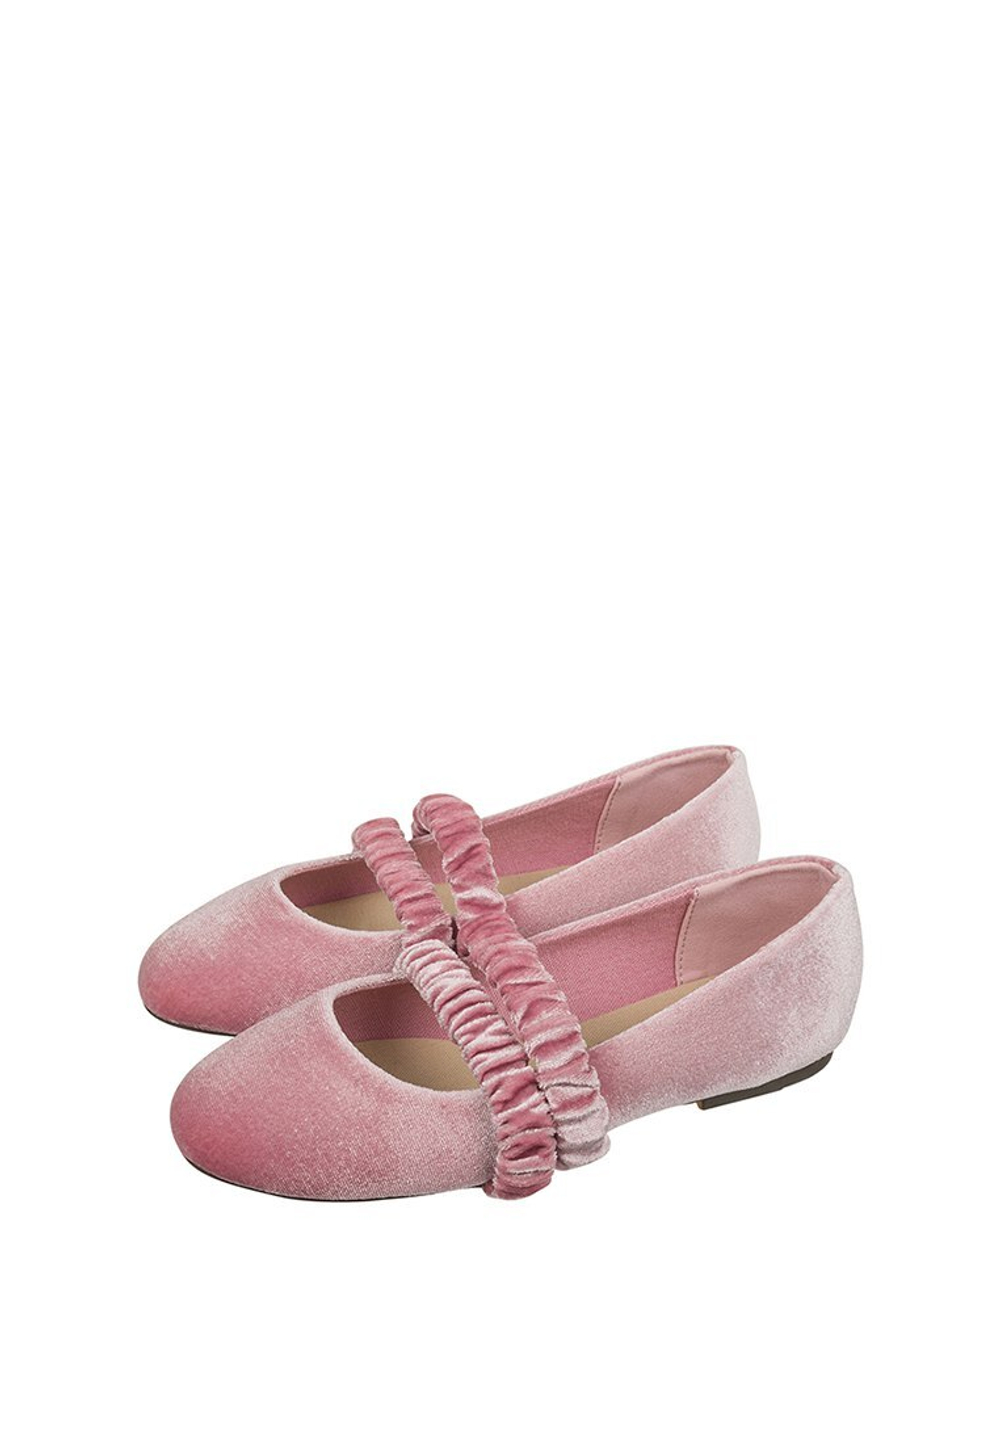 Праздничные туфли/балетки для девочки Pinky